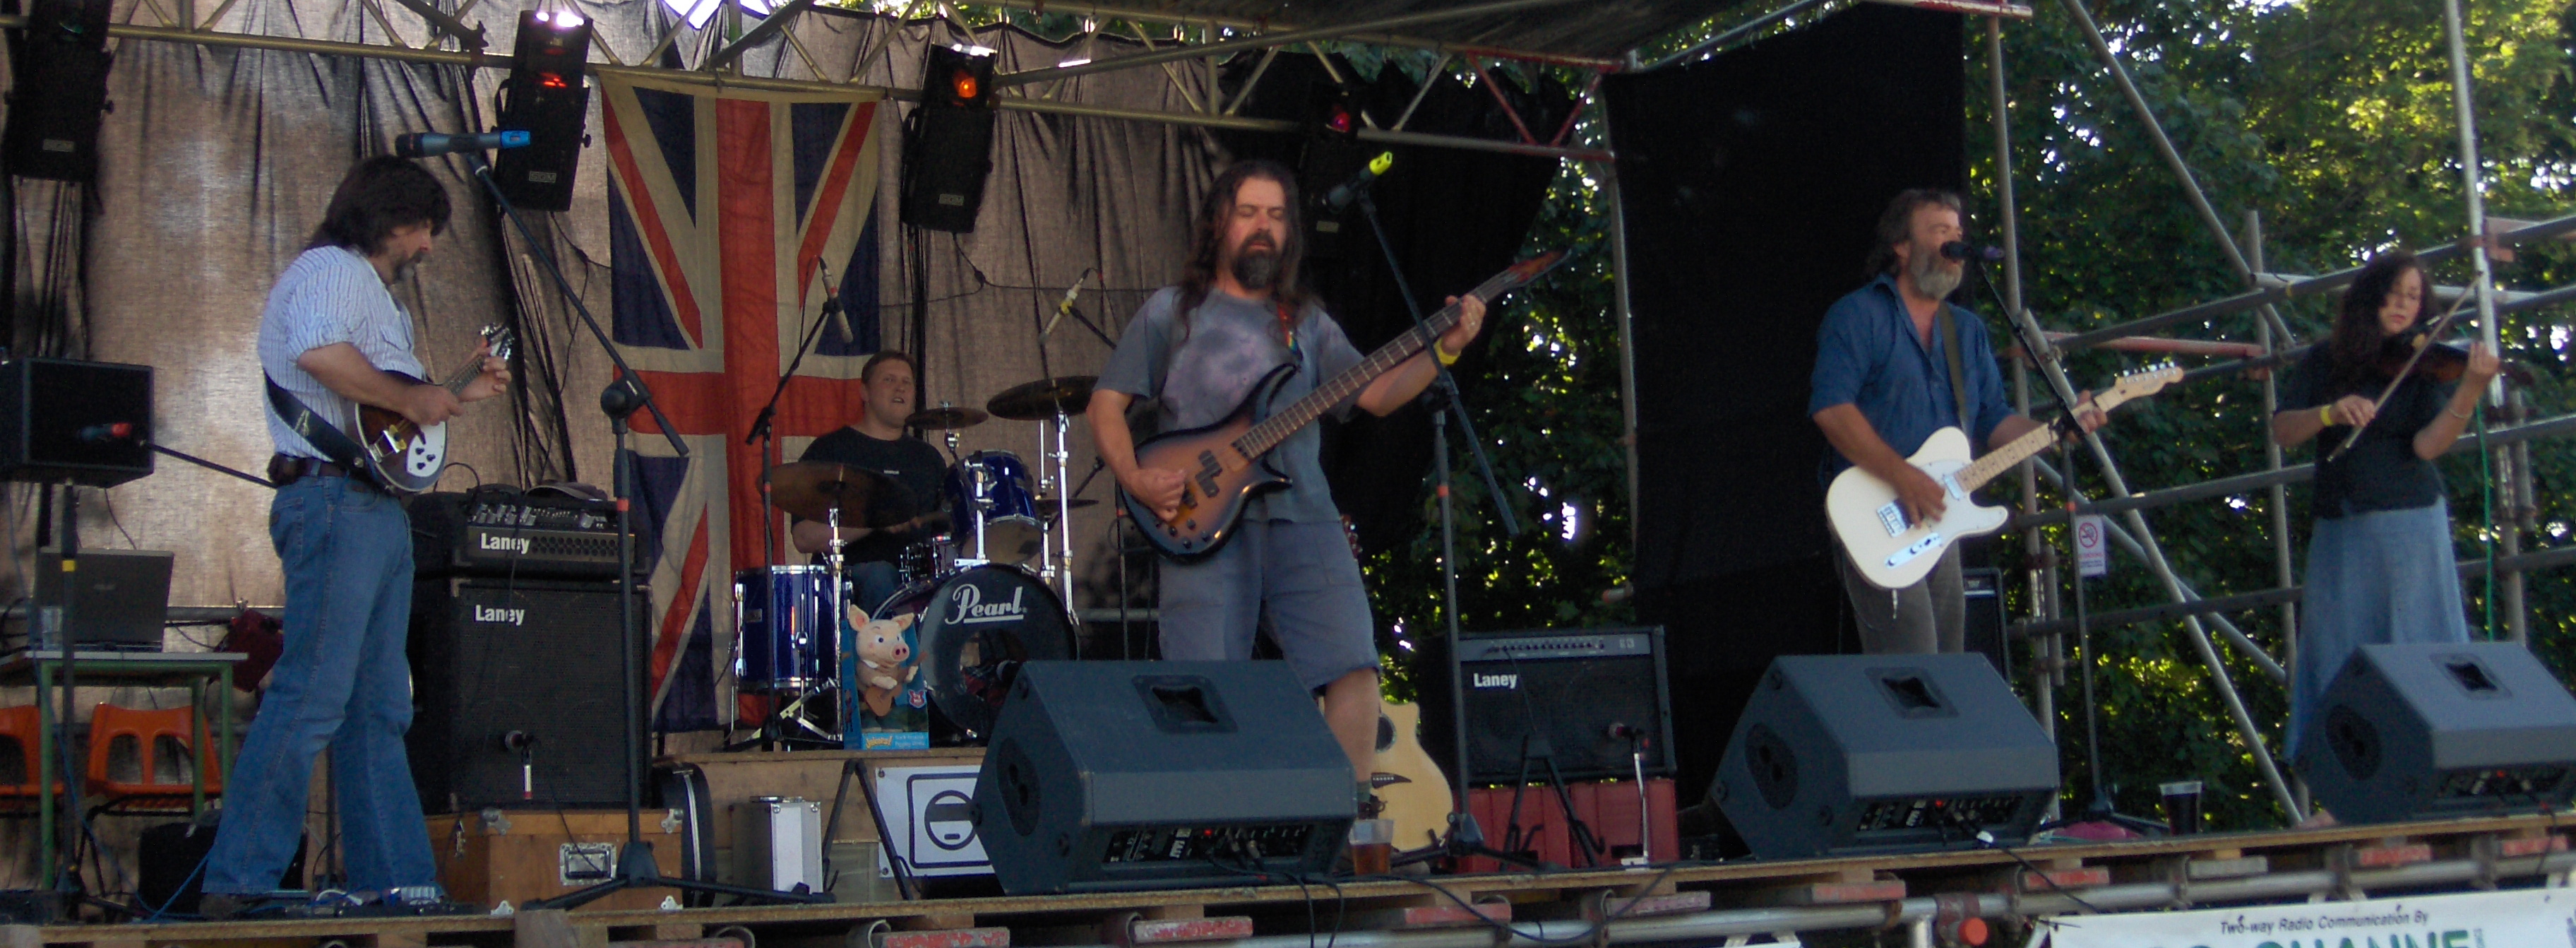 Rode Festival 2008